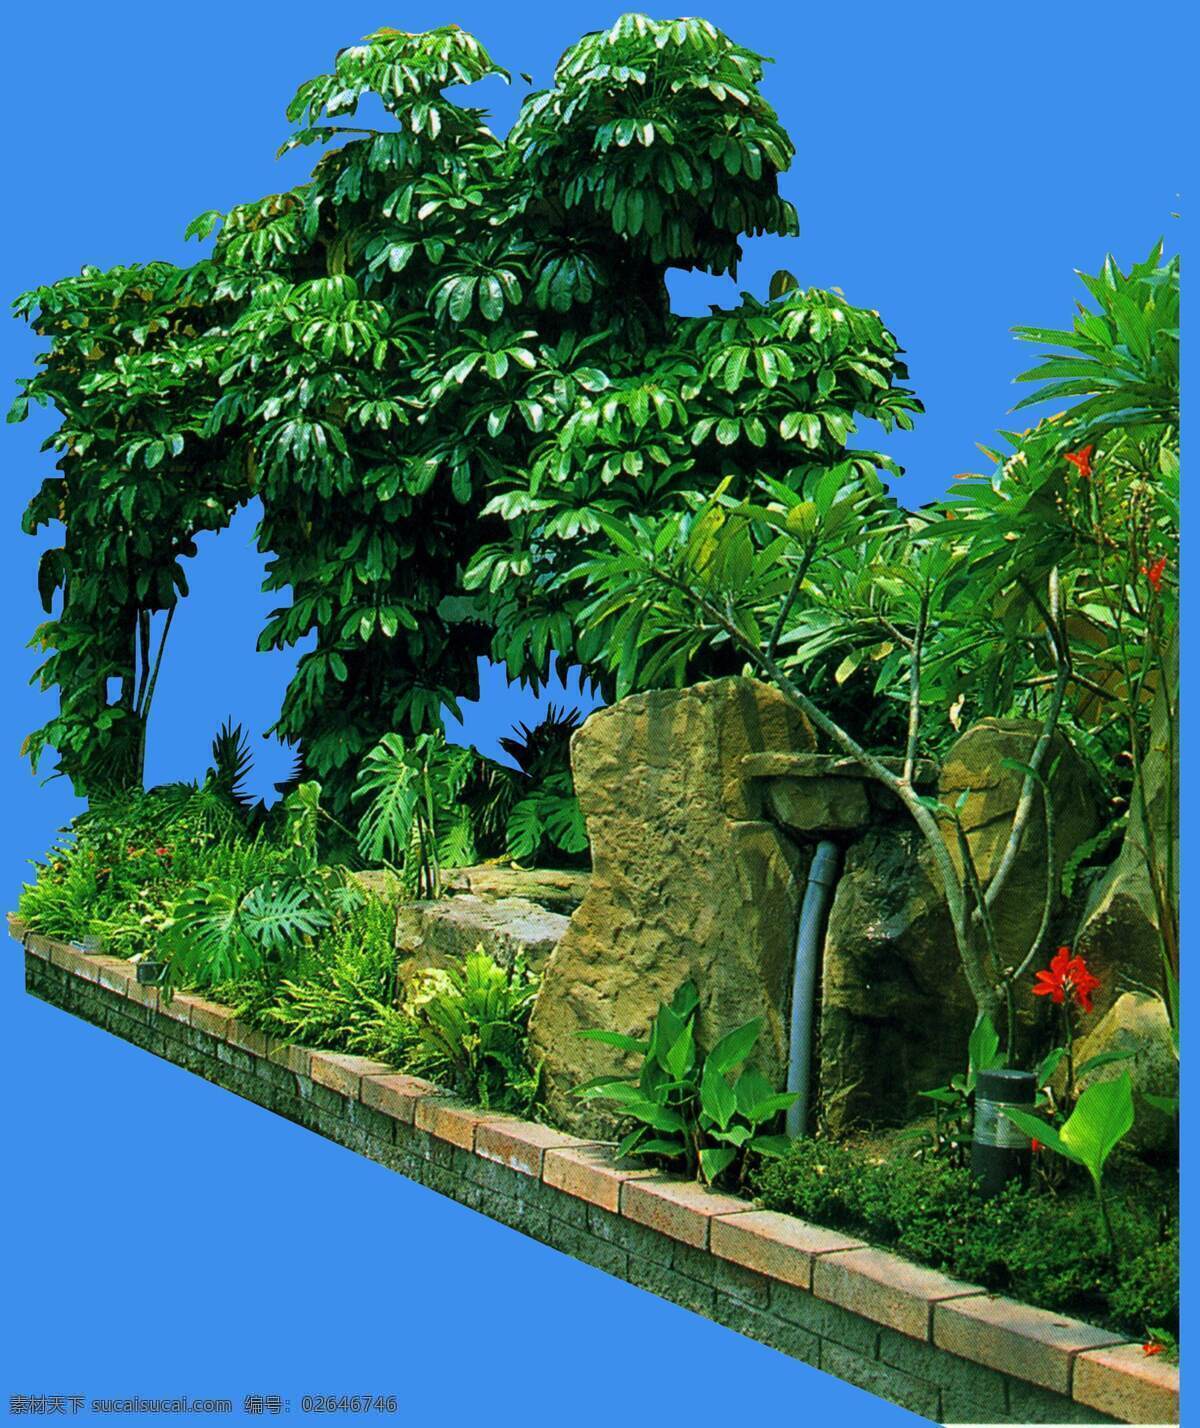 澳洲 鸭 脚 木 植物 园林植物 澳洲鸭脚木 配景素材 园林 建筑装饰 设计素材 3d模型素材 室内场景模型